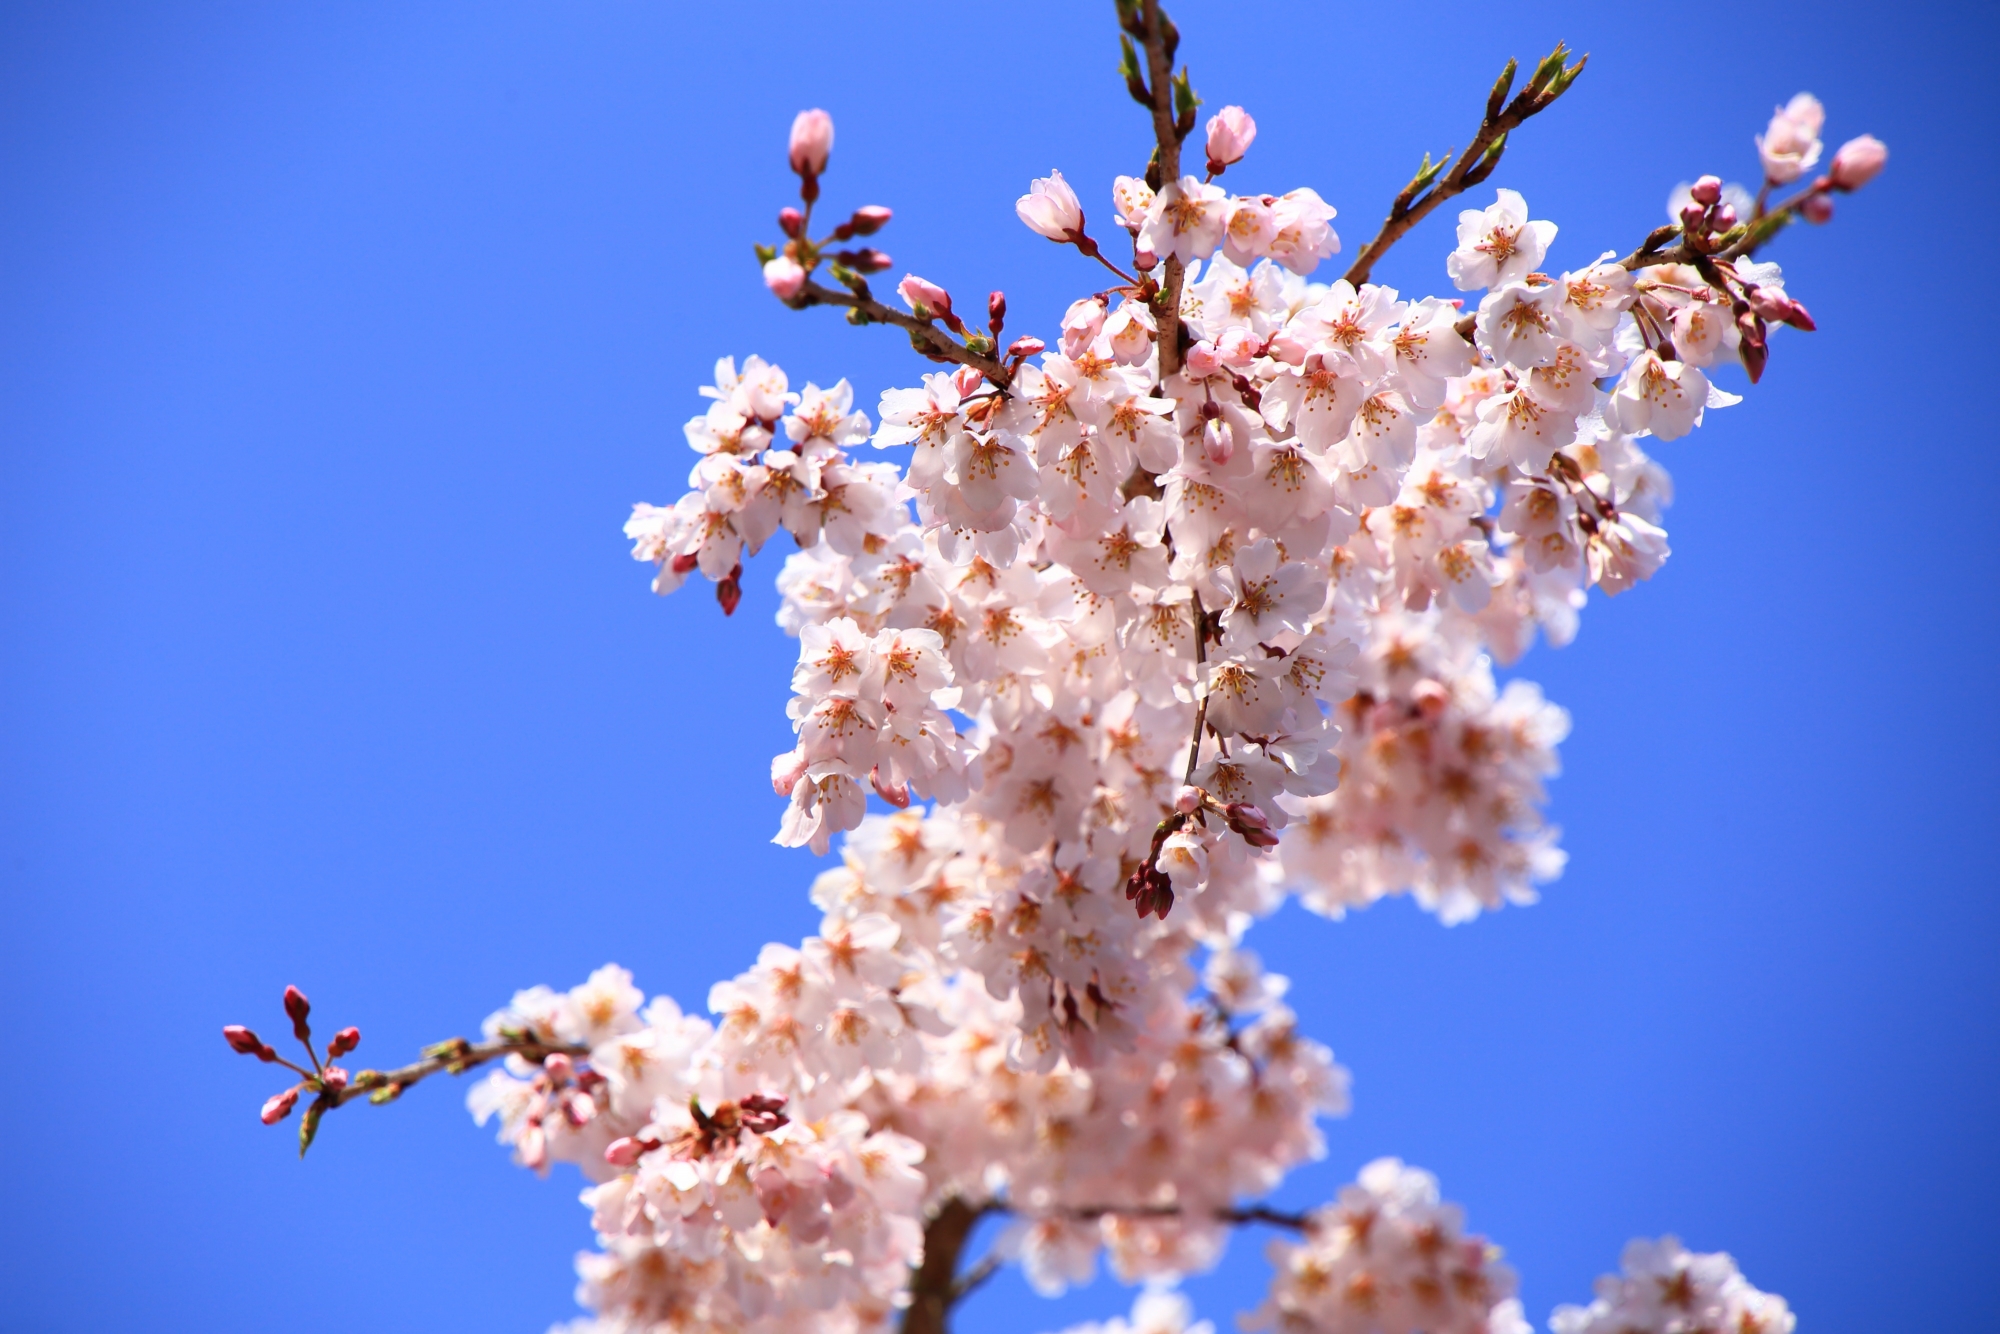 太陽をいっぱいに浴びて輝く春色の桜